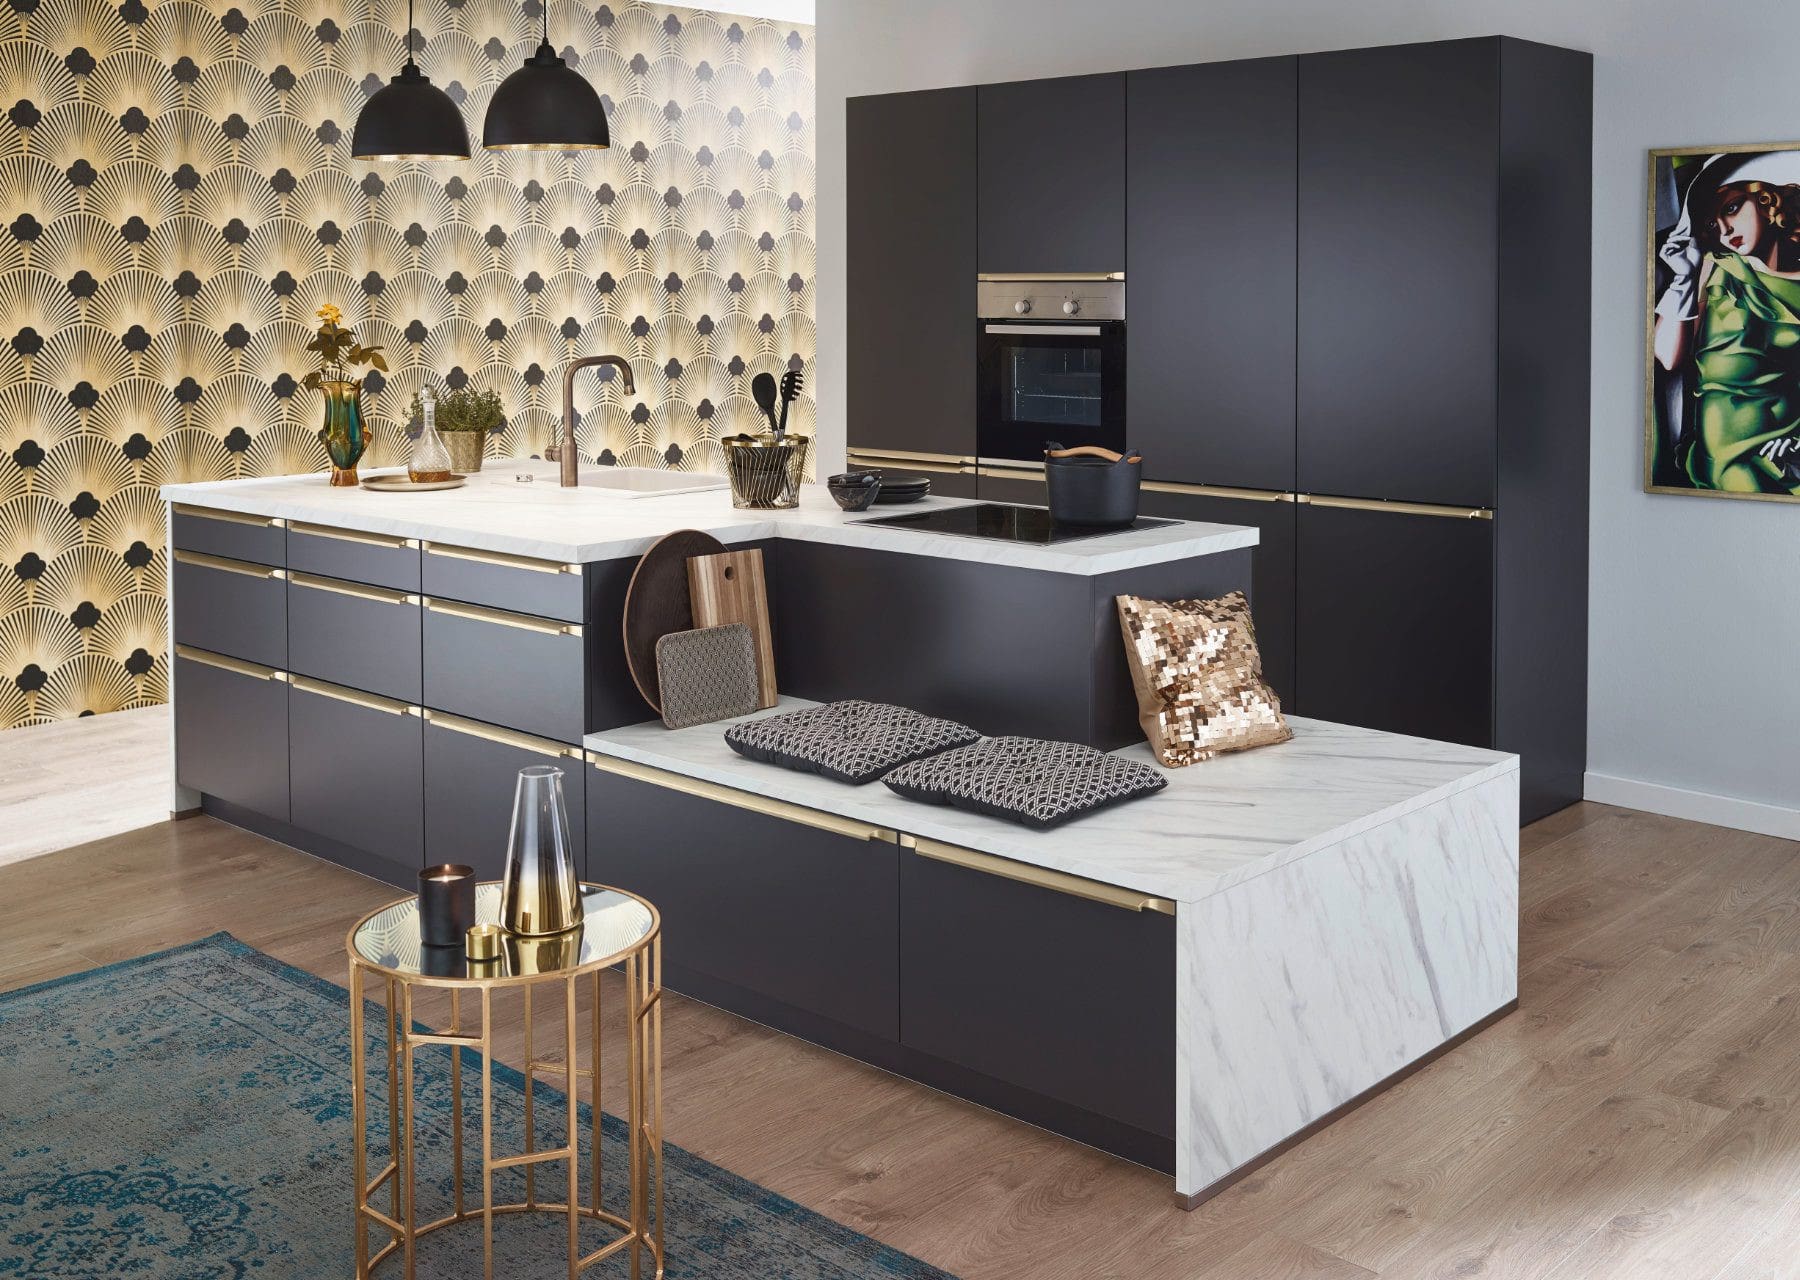 Bauformat Modern Matt Kitchen With Island 2 | Rowe Fitted Interiors